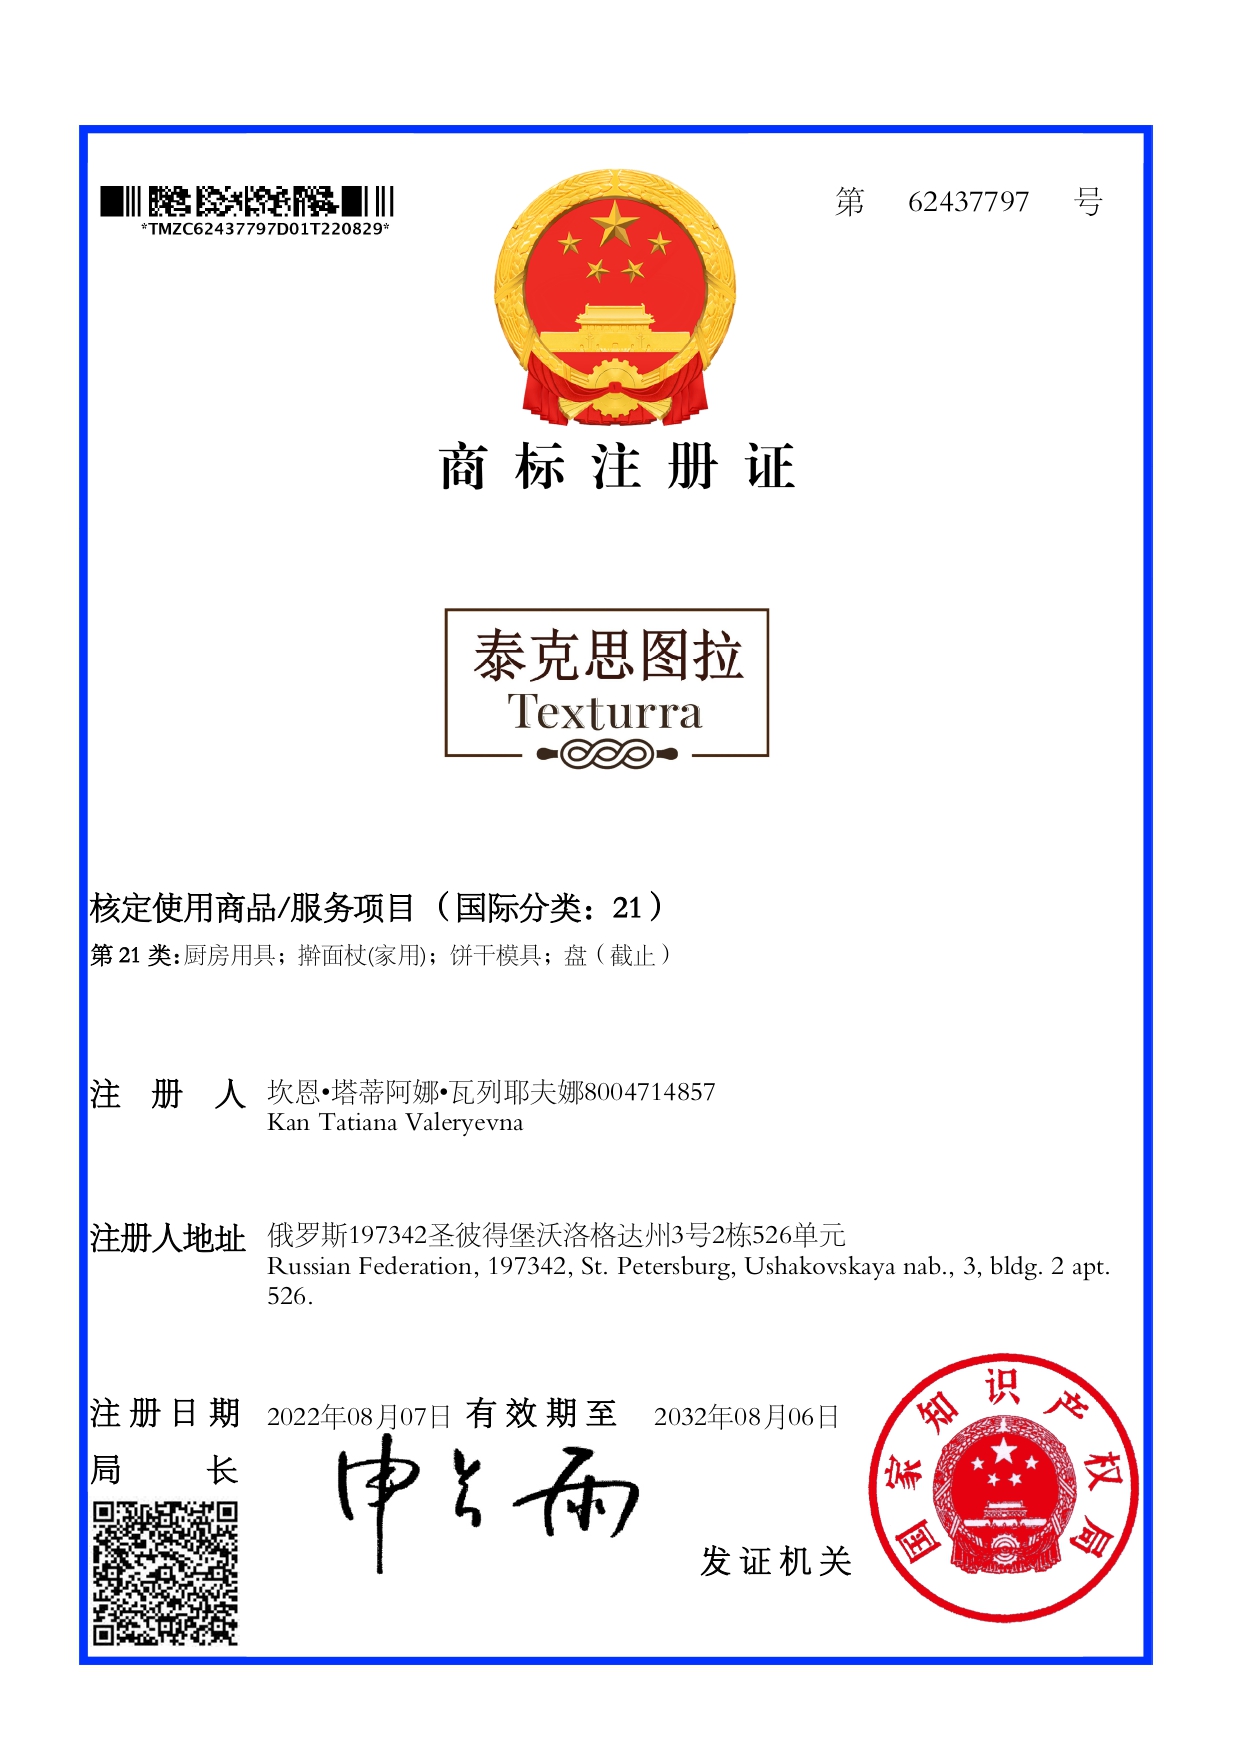 сертификат товарный знак китай